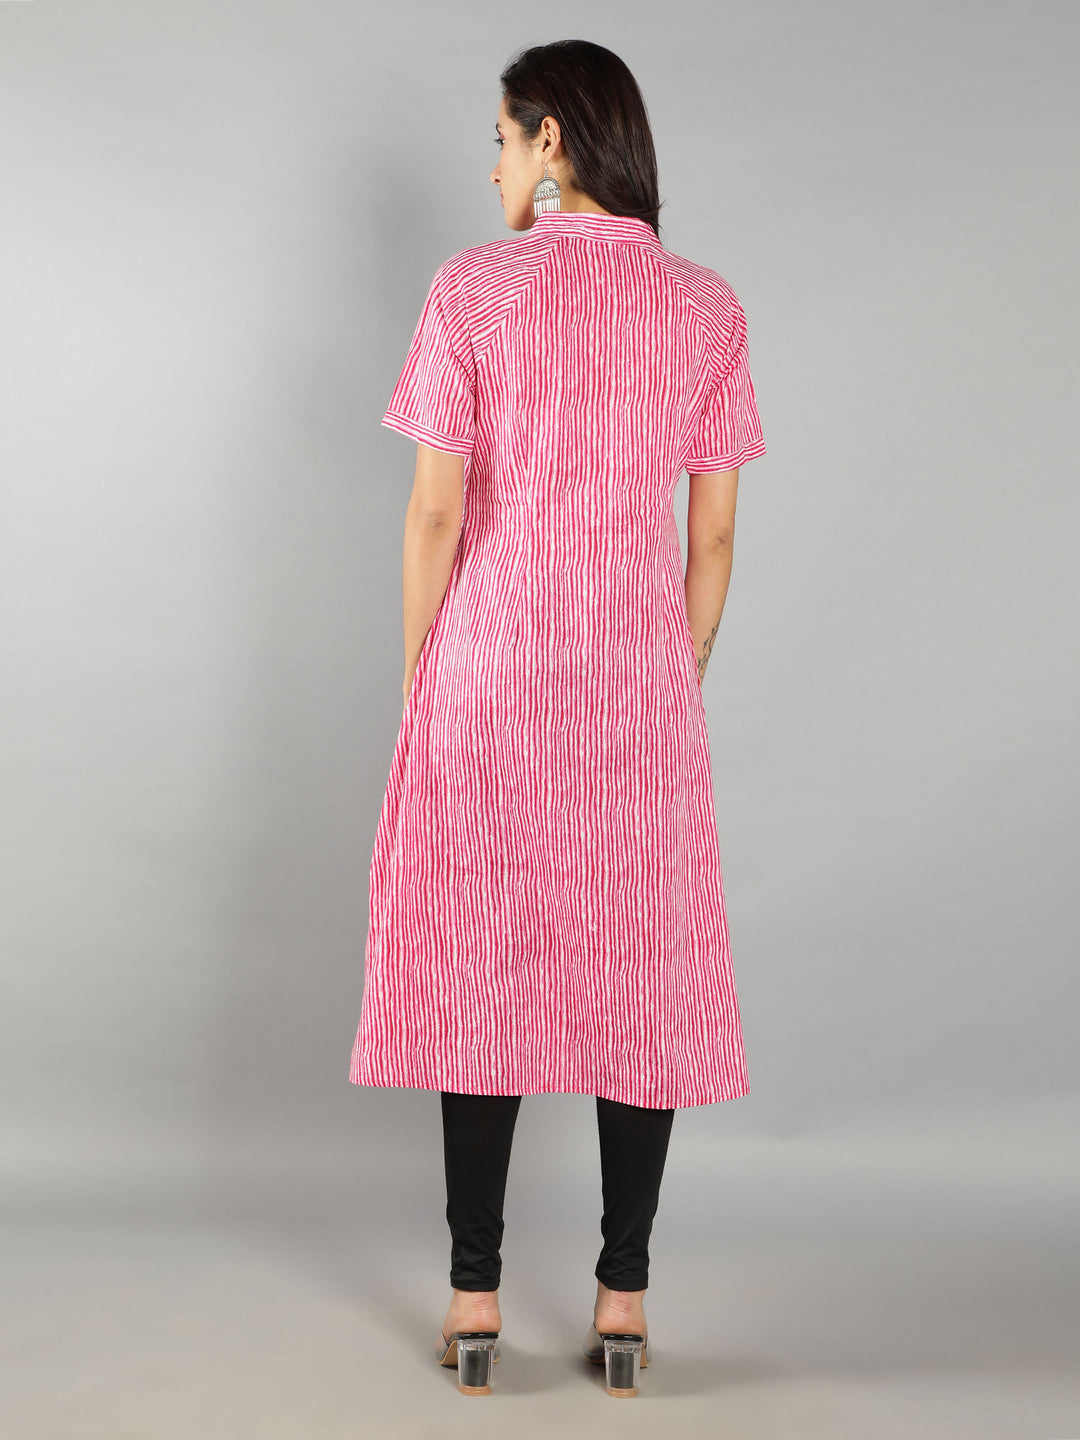 See Designs Pink Shirt Women Dress